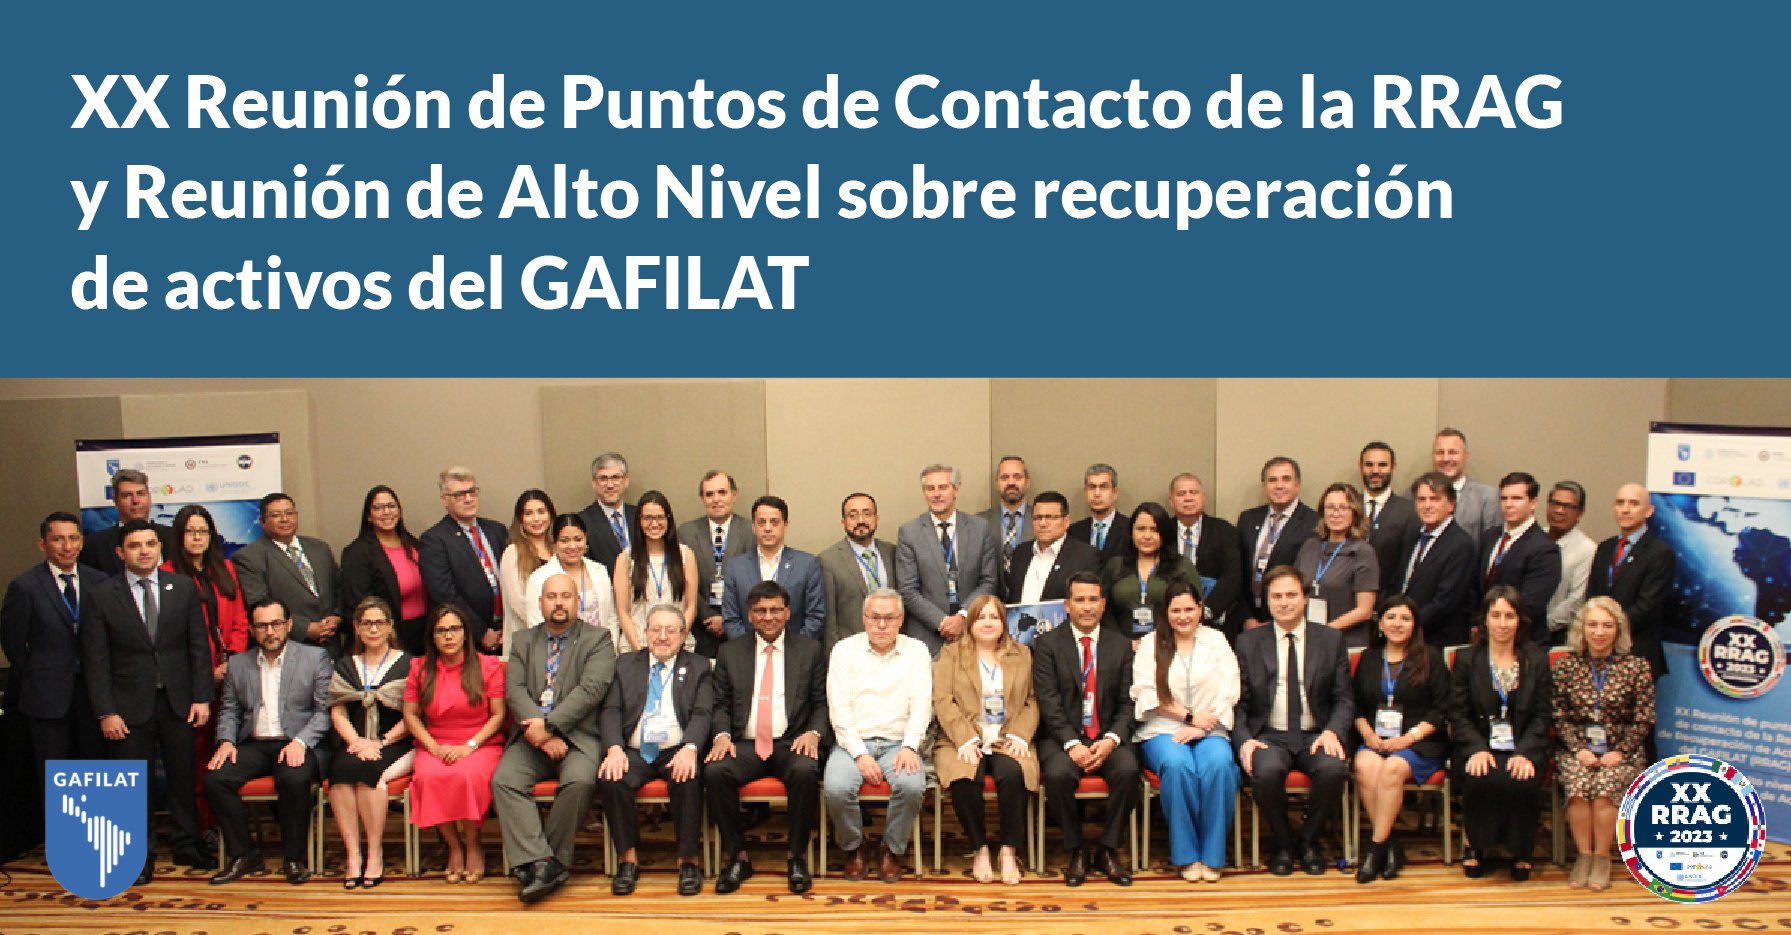 Ministra participa en la XX Reunión de Puntos de Contacto de la RRAG y en Reunión de Alto Nivel sobre recuperación de activos del GAFILAT